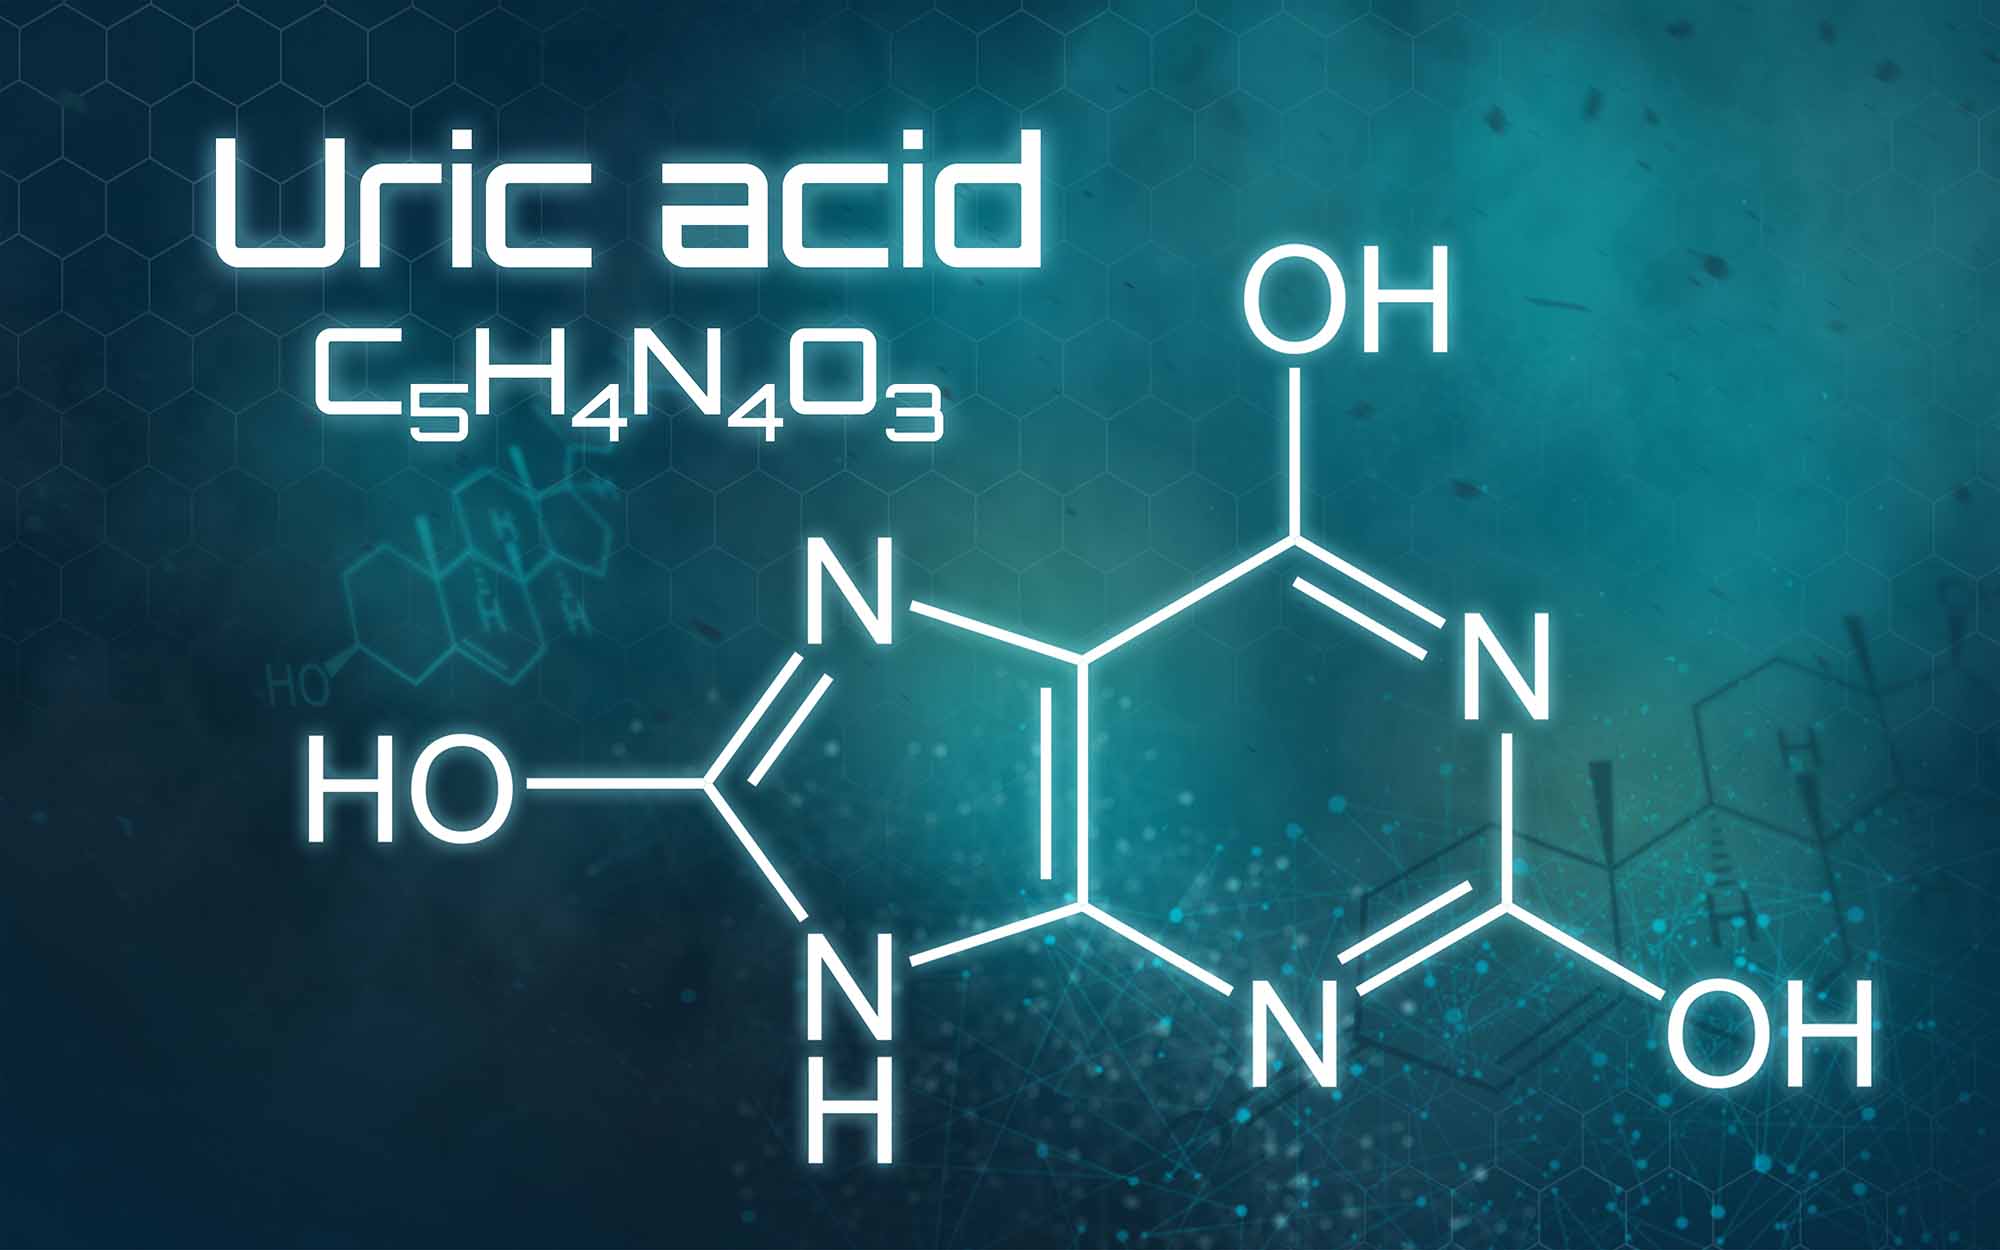 Công thức của Acid uric là như thế nào?